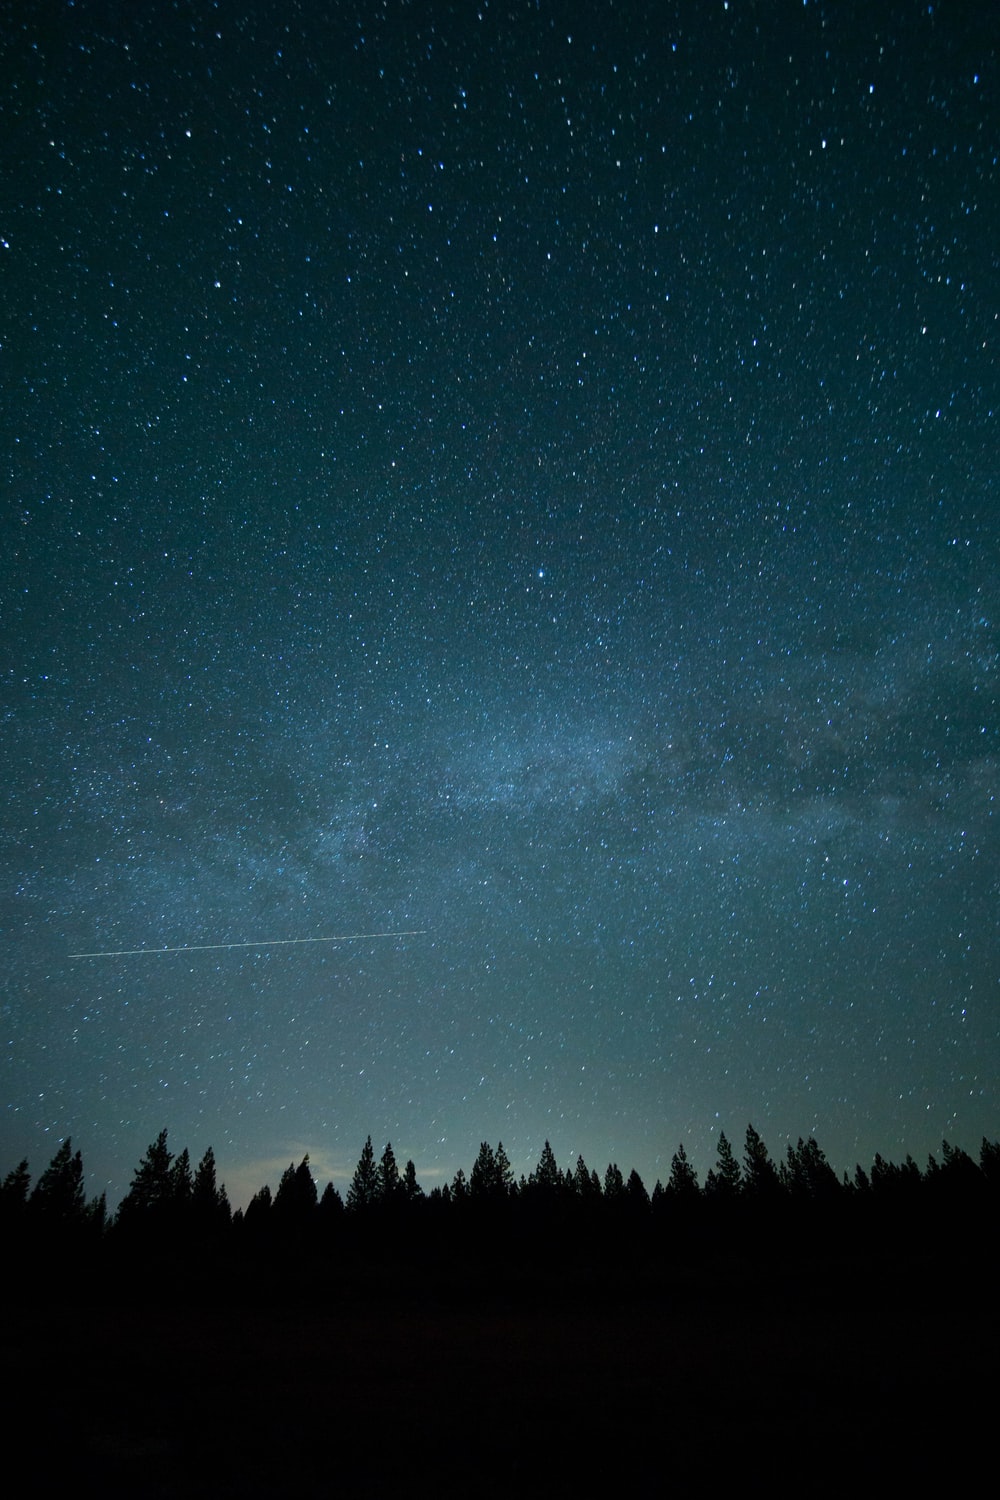 Hãy chiêm ngưỡng vẻ đẹp của đám mây đêm giữa không gian bao la, chúng sẽ mang lại cho bạn những cảm xúc rất đặc biệt khi thưởng thức ảnh.